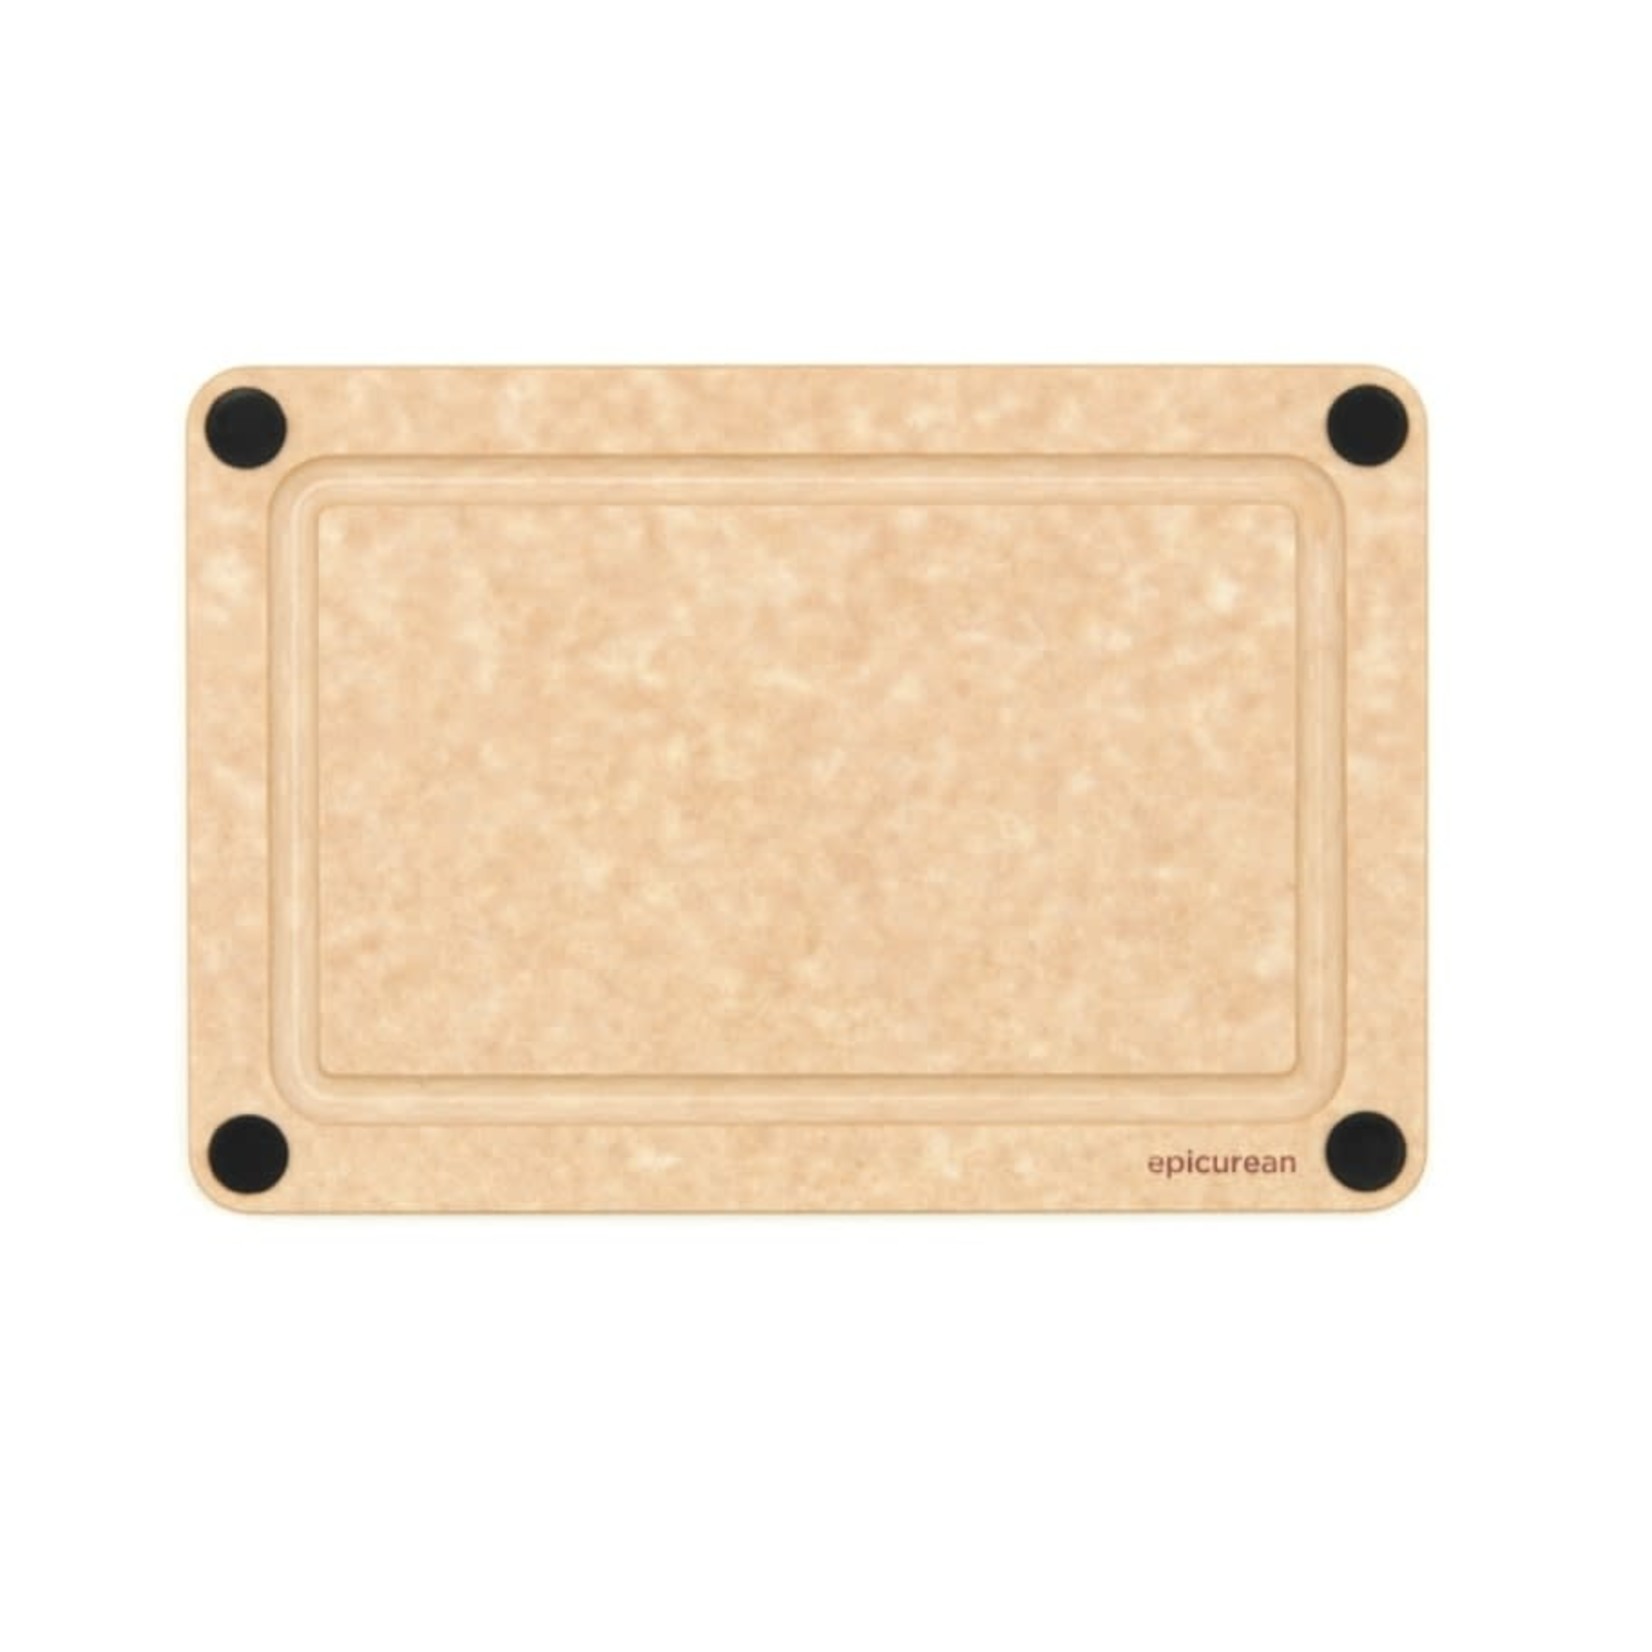 EPICUREAN EPICUREAN Carving Button Board 10x7” - Natural